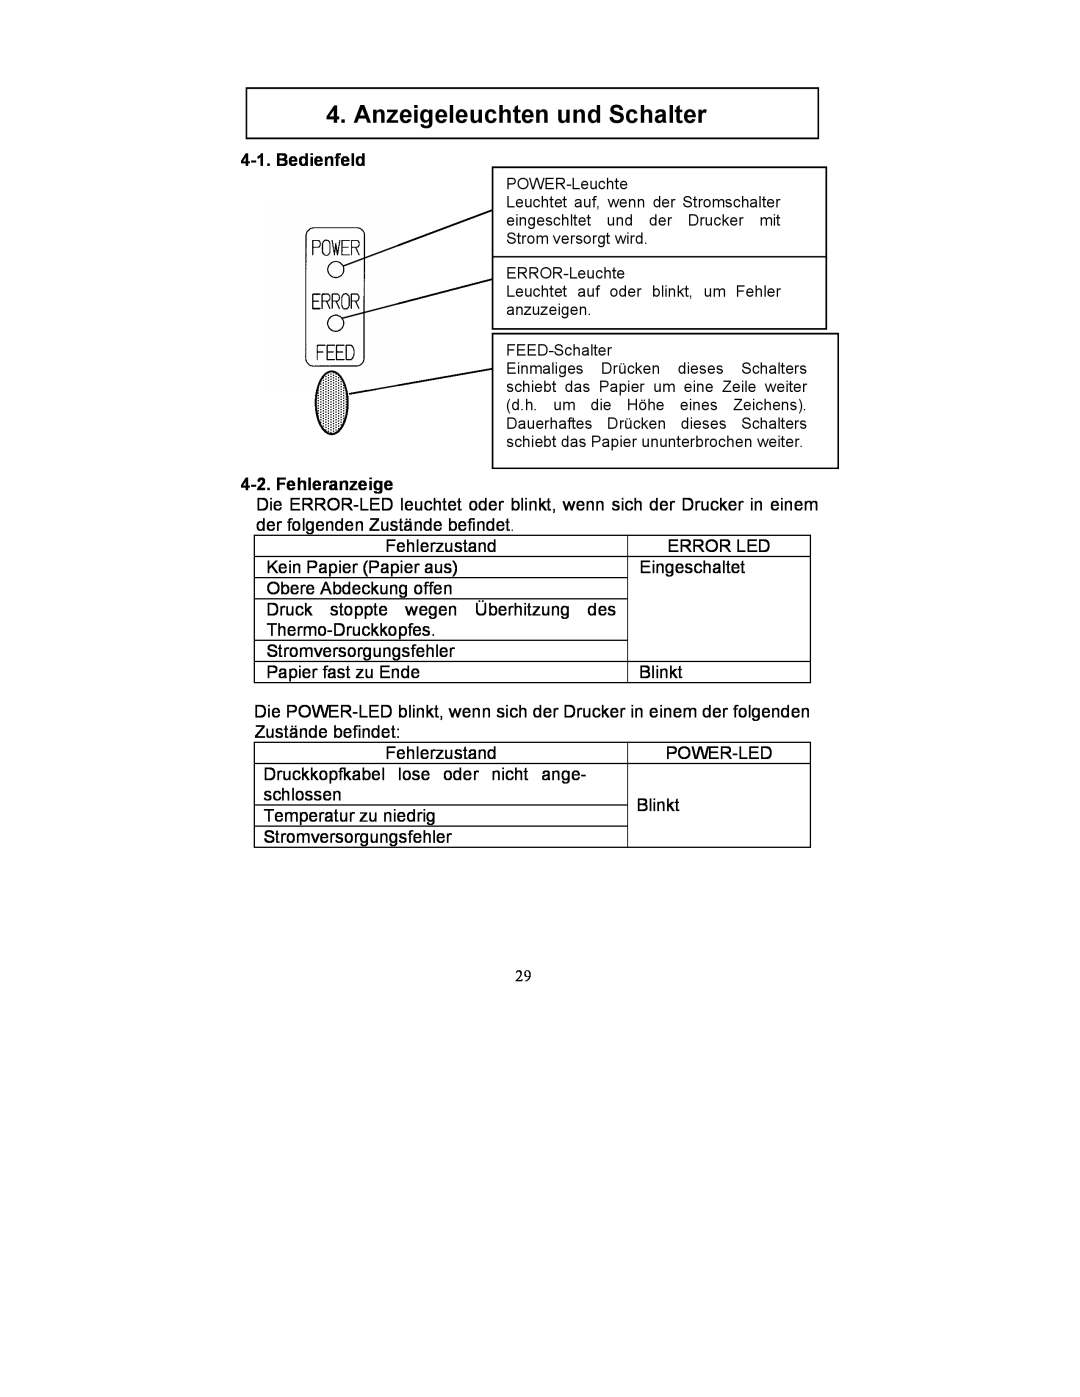 Fujitsu FP-410 user manual Anzeigeleuchten und Schalter, Bedienfeld, Fehleranzeige 